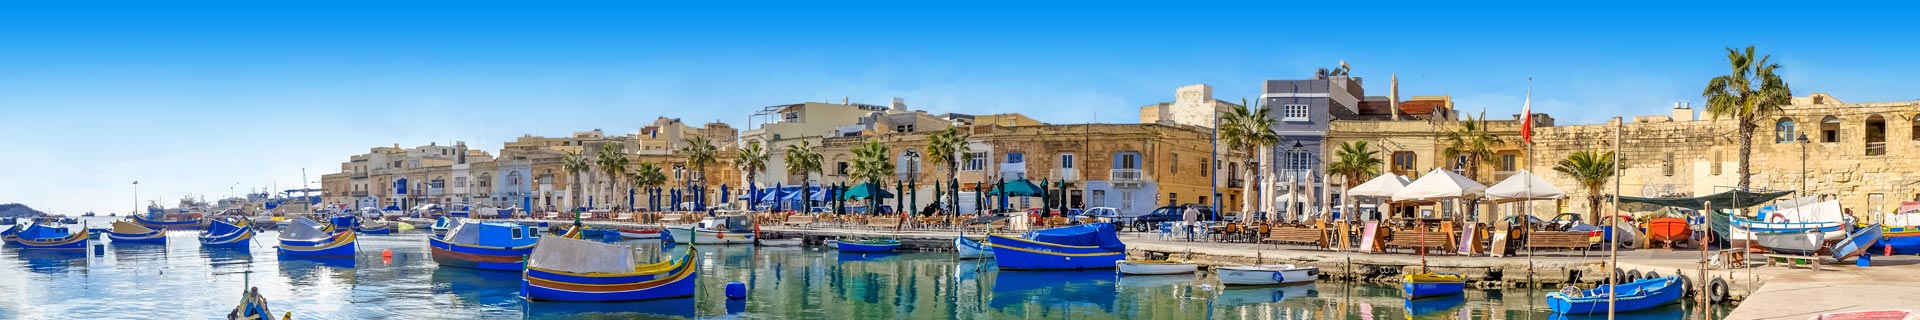 Uitzicht op schattige bootjes in de haven van Malta